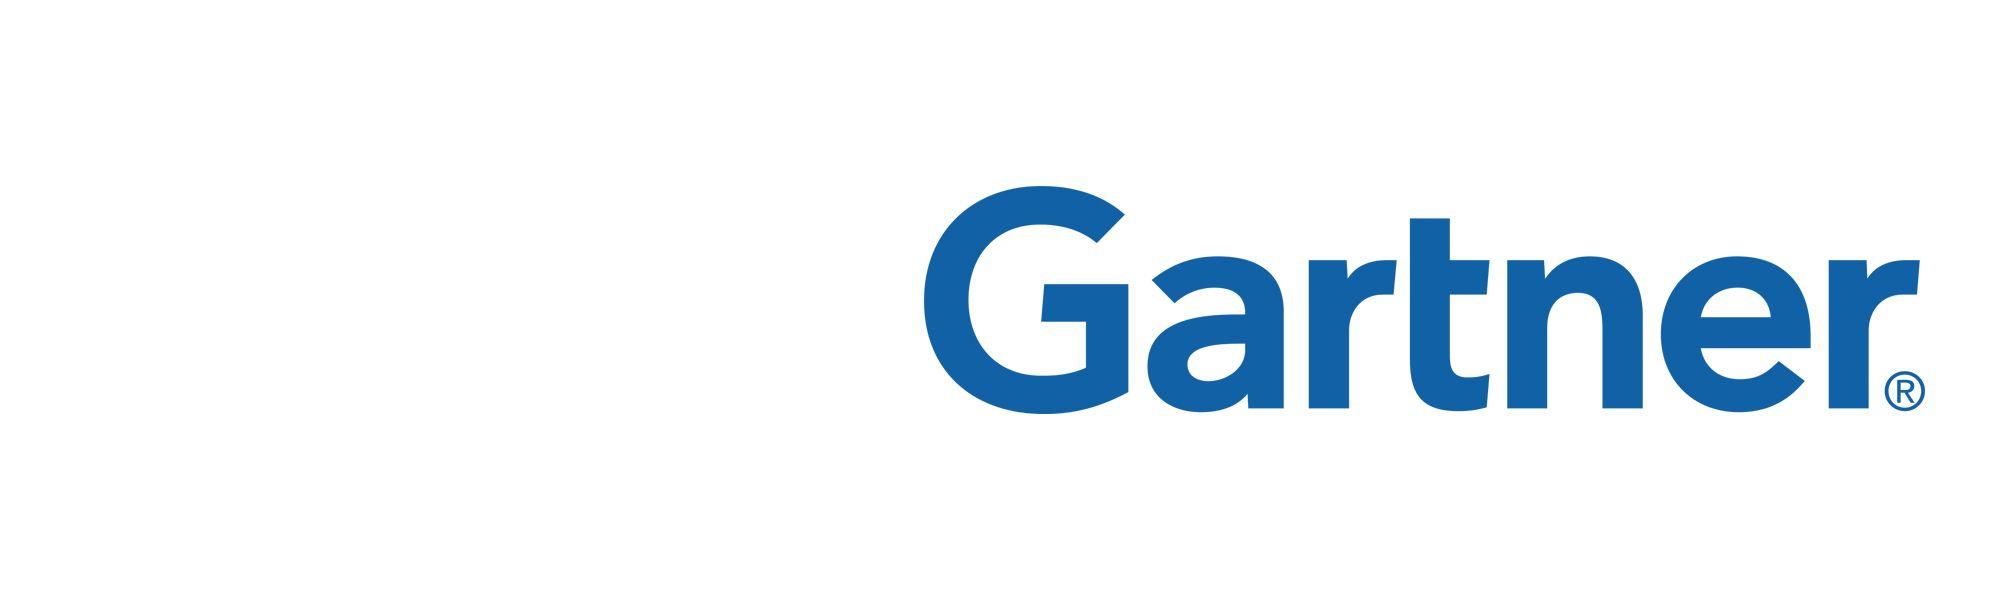 Gartner Logo - Gartner Logos